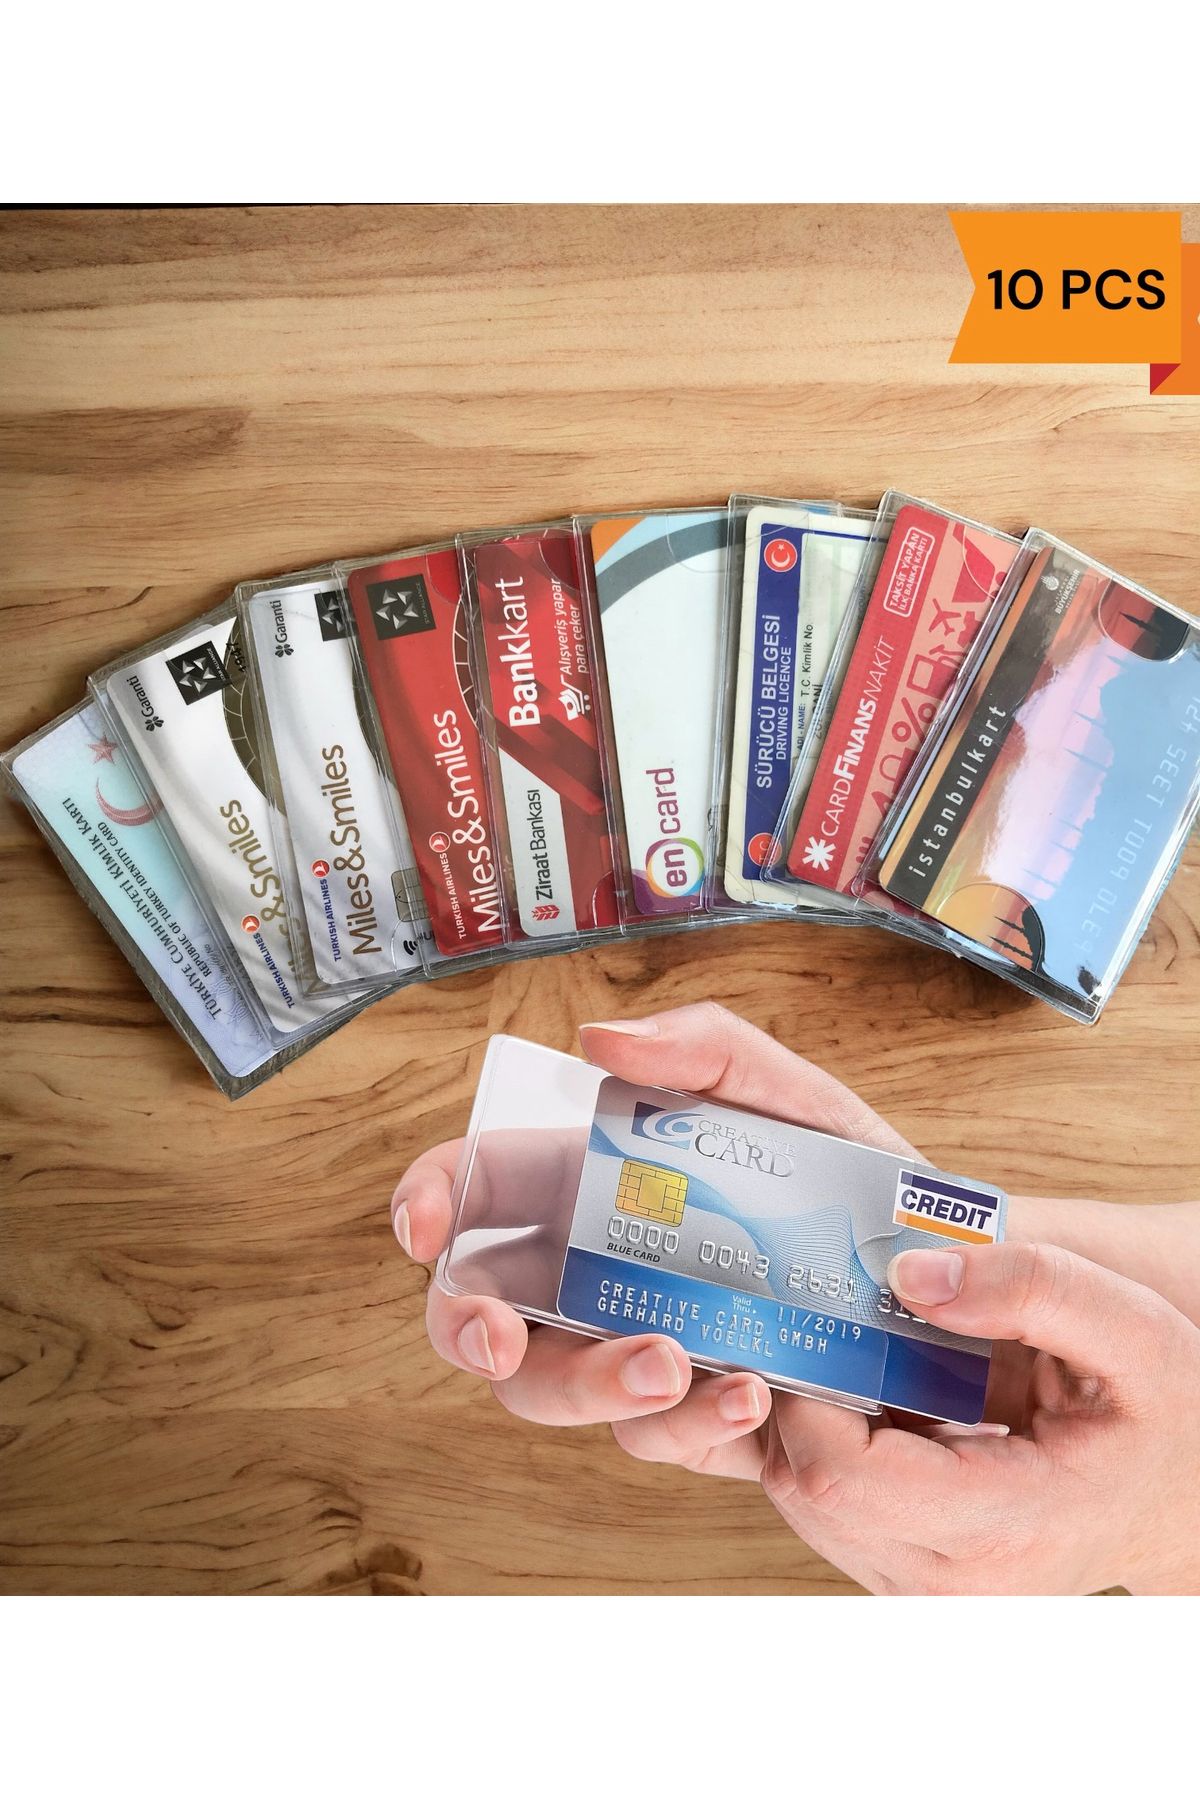 Gempo 10 Adet Minimalist Yeni Nesil Kimlik Kabı Temassız Kredi Kart Koruyucu Tüm Kartlar Için Uyumlu